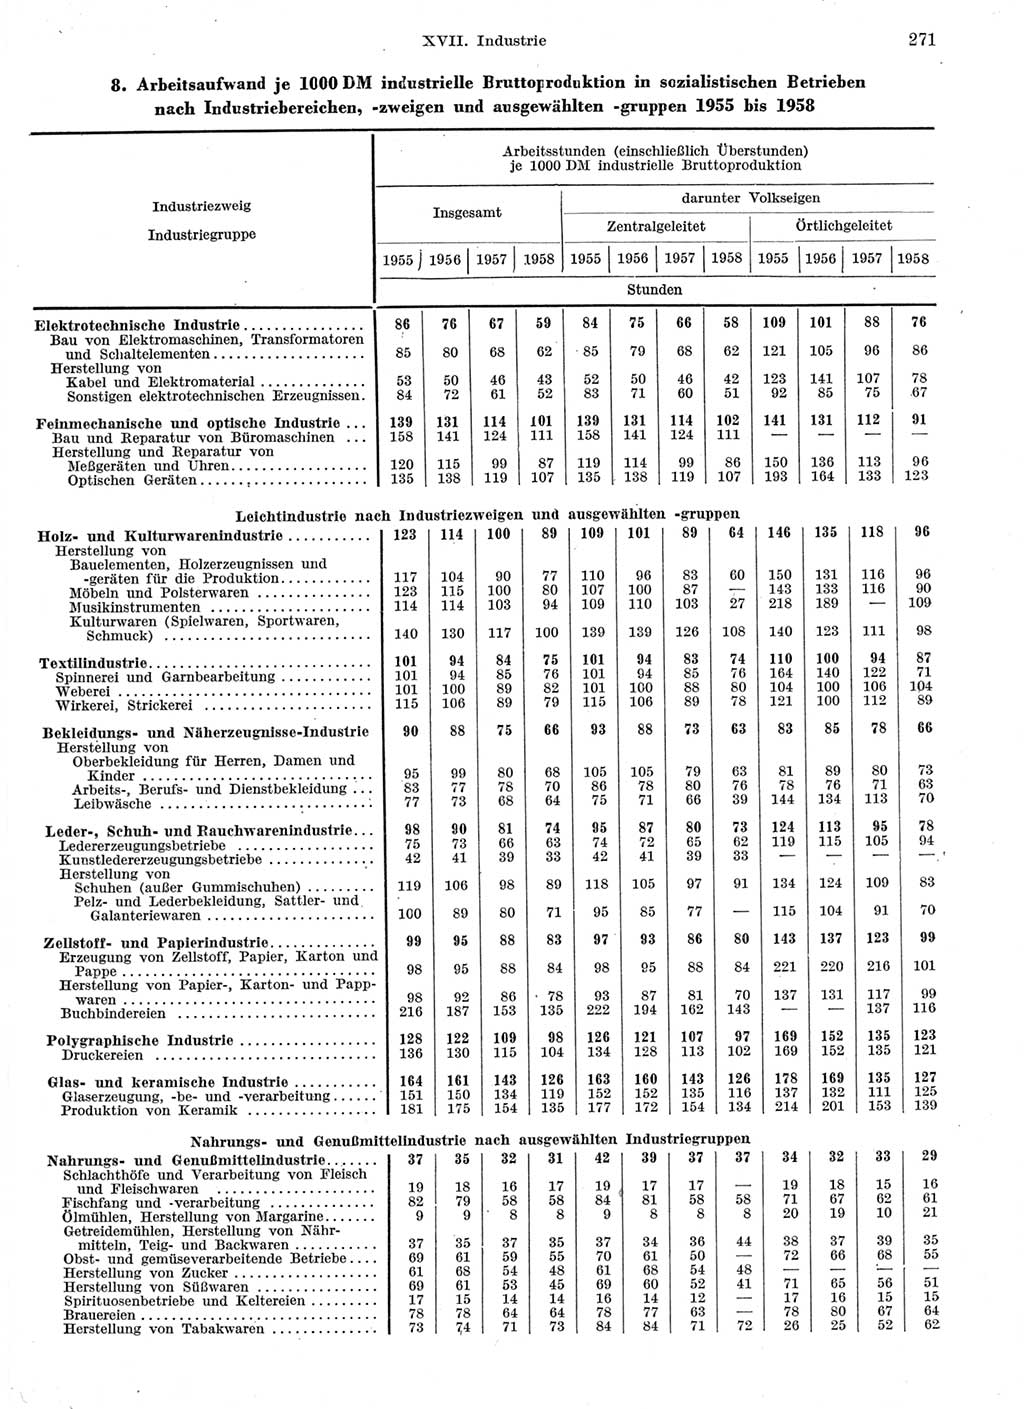 Statistisches Jahrbuch der Deutschen Demokratischen Republik (DDR) 1959, Seite 271 (Stat. Jb. DDR 1959, S. 271)